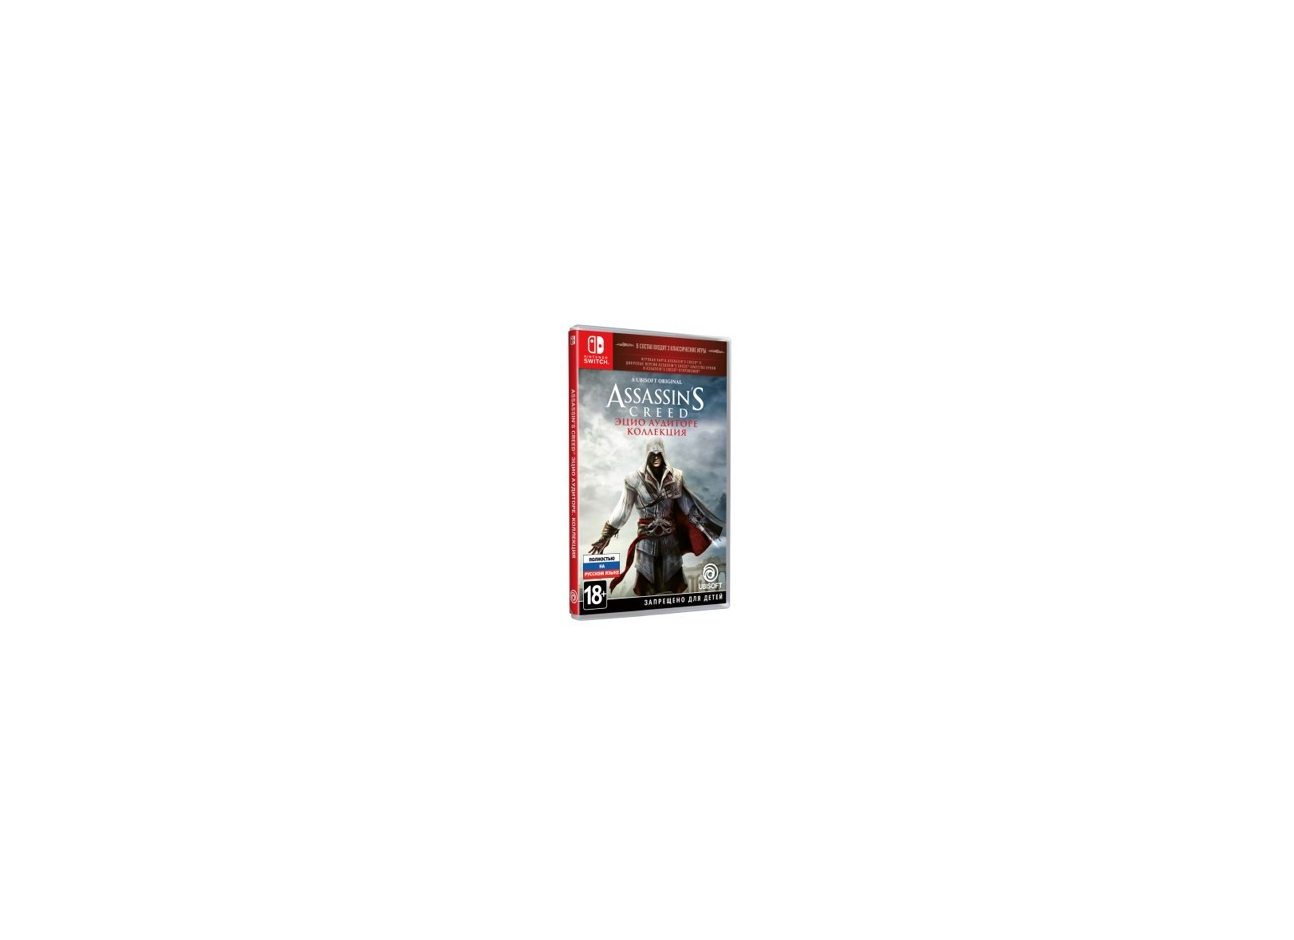 Nintendo Assassin's Creed: Эцио Аудиторе. Коллекция Nintendo